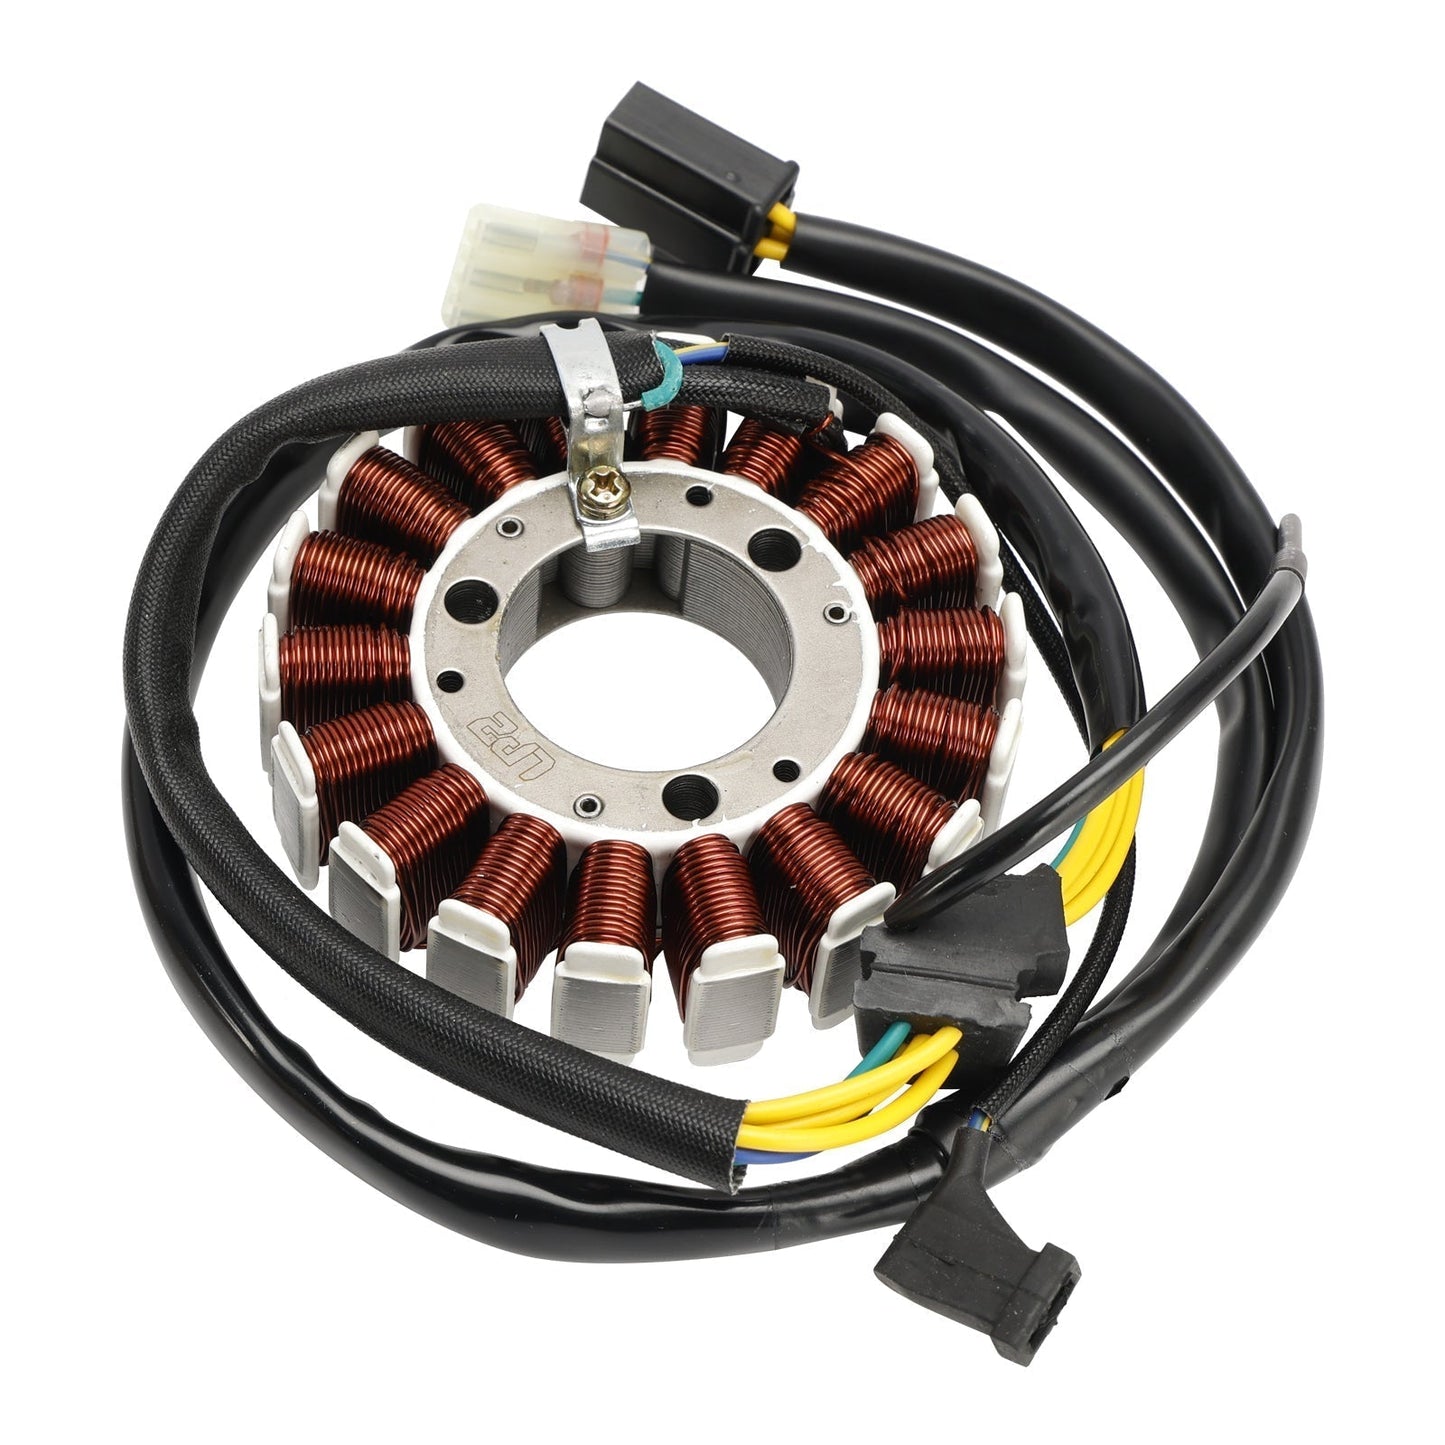 Statore bobina magnetica Honda CRF230L 2008-2009 + regolatore di tensione + gruppo guarnizione 31120-KFB-841